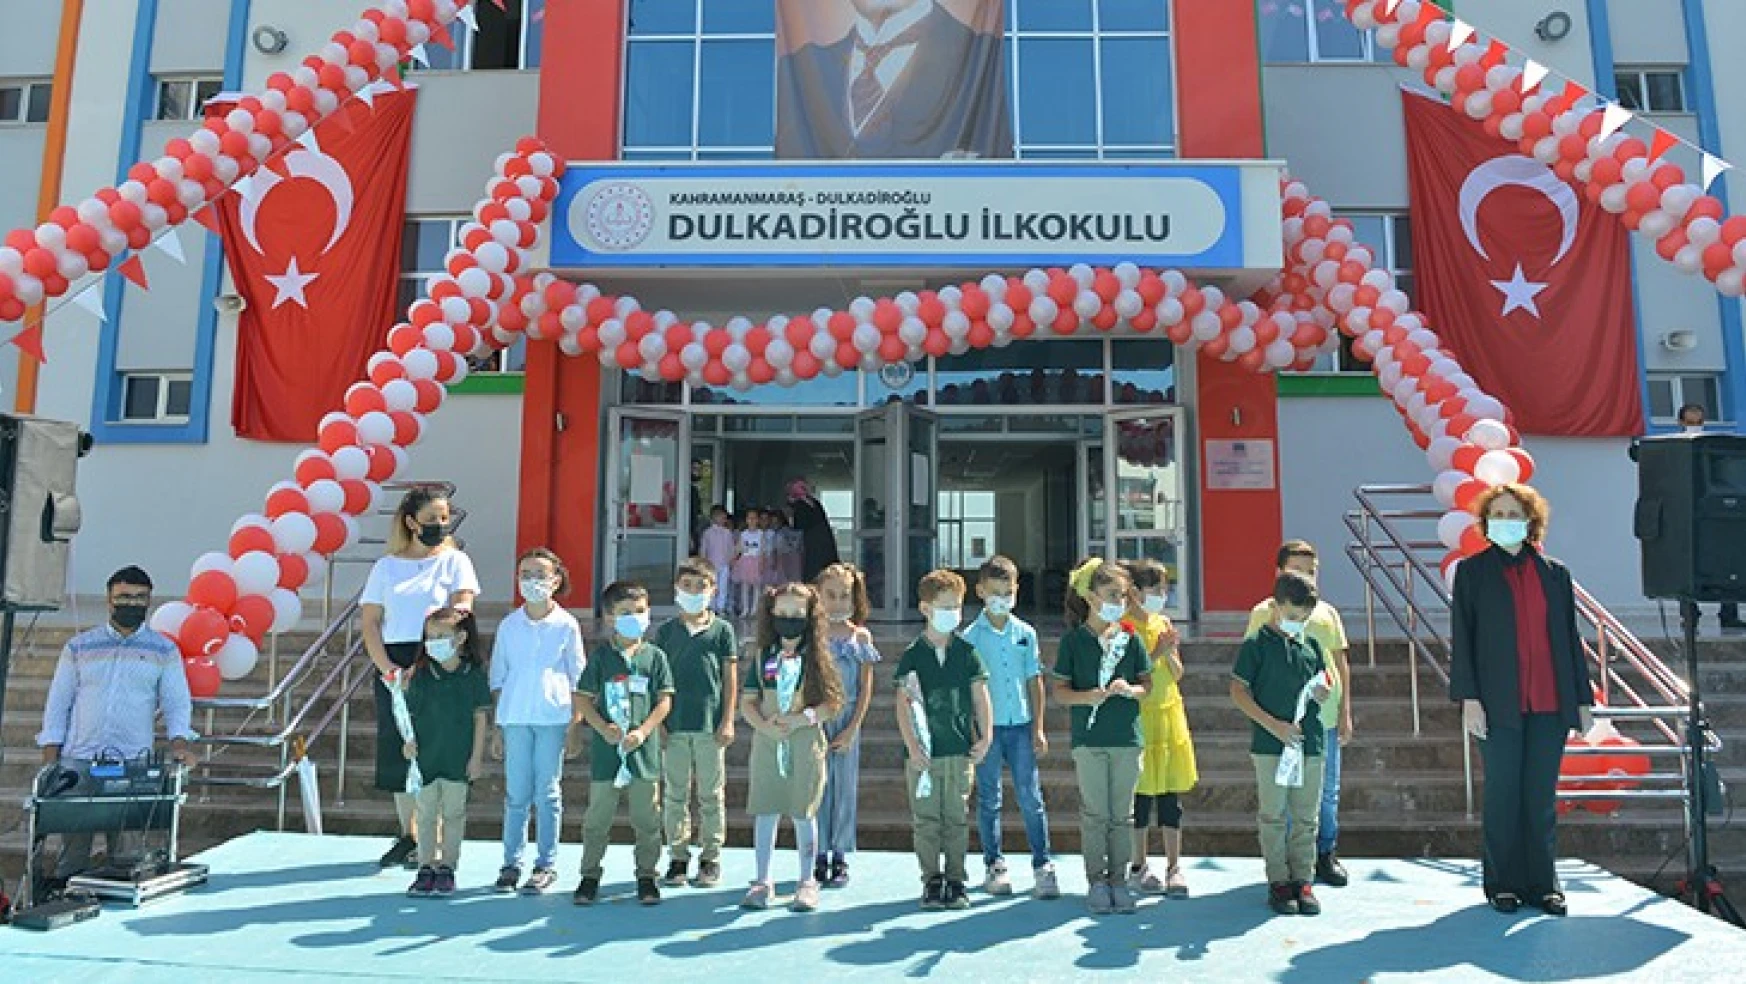 Dulkadiroğlu Belediyesi'nden ilköğretim ve ortaöğretim öğrencilerine kırtasiye yardımı